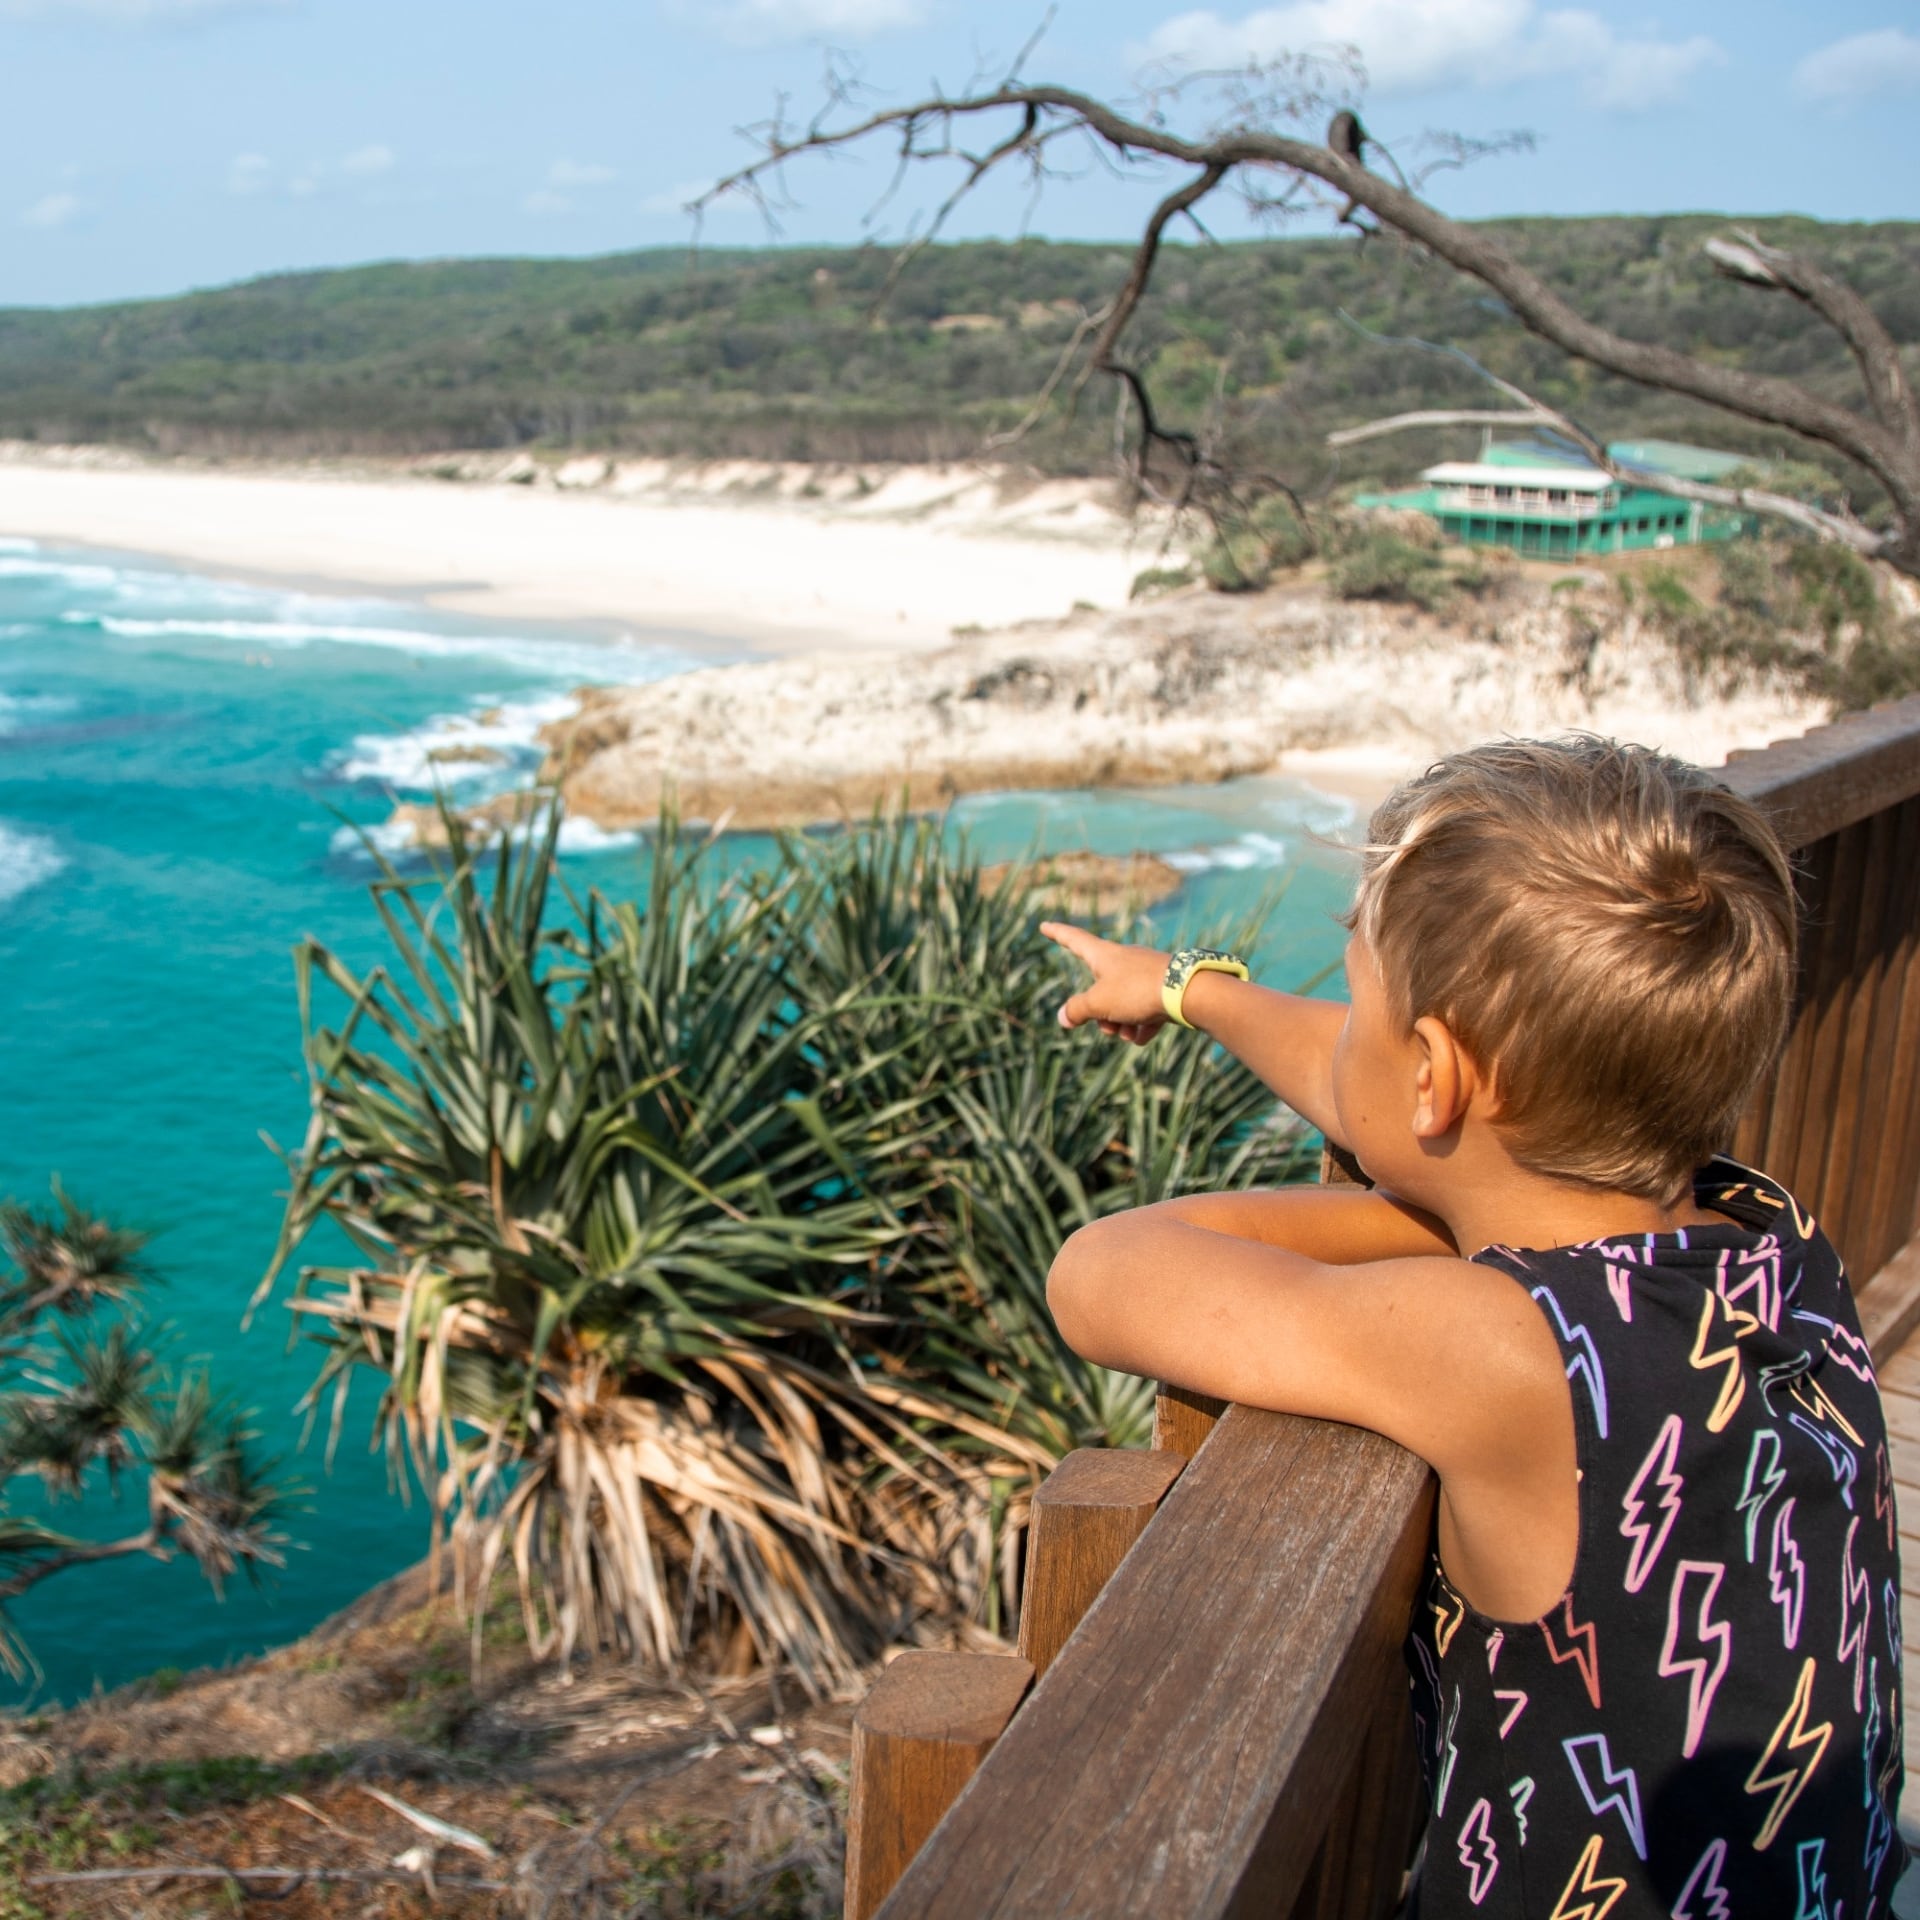 ノース・ゴージ・ウォークで海を指さす少年 © Tourism and Events Queensland